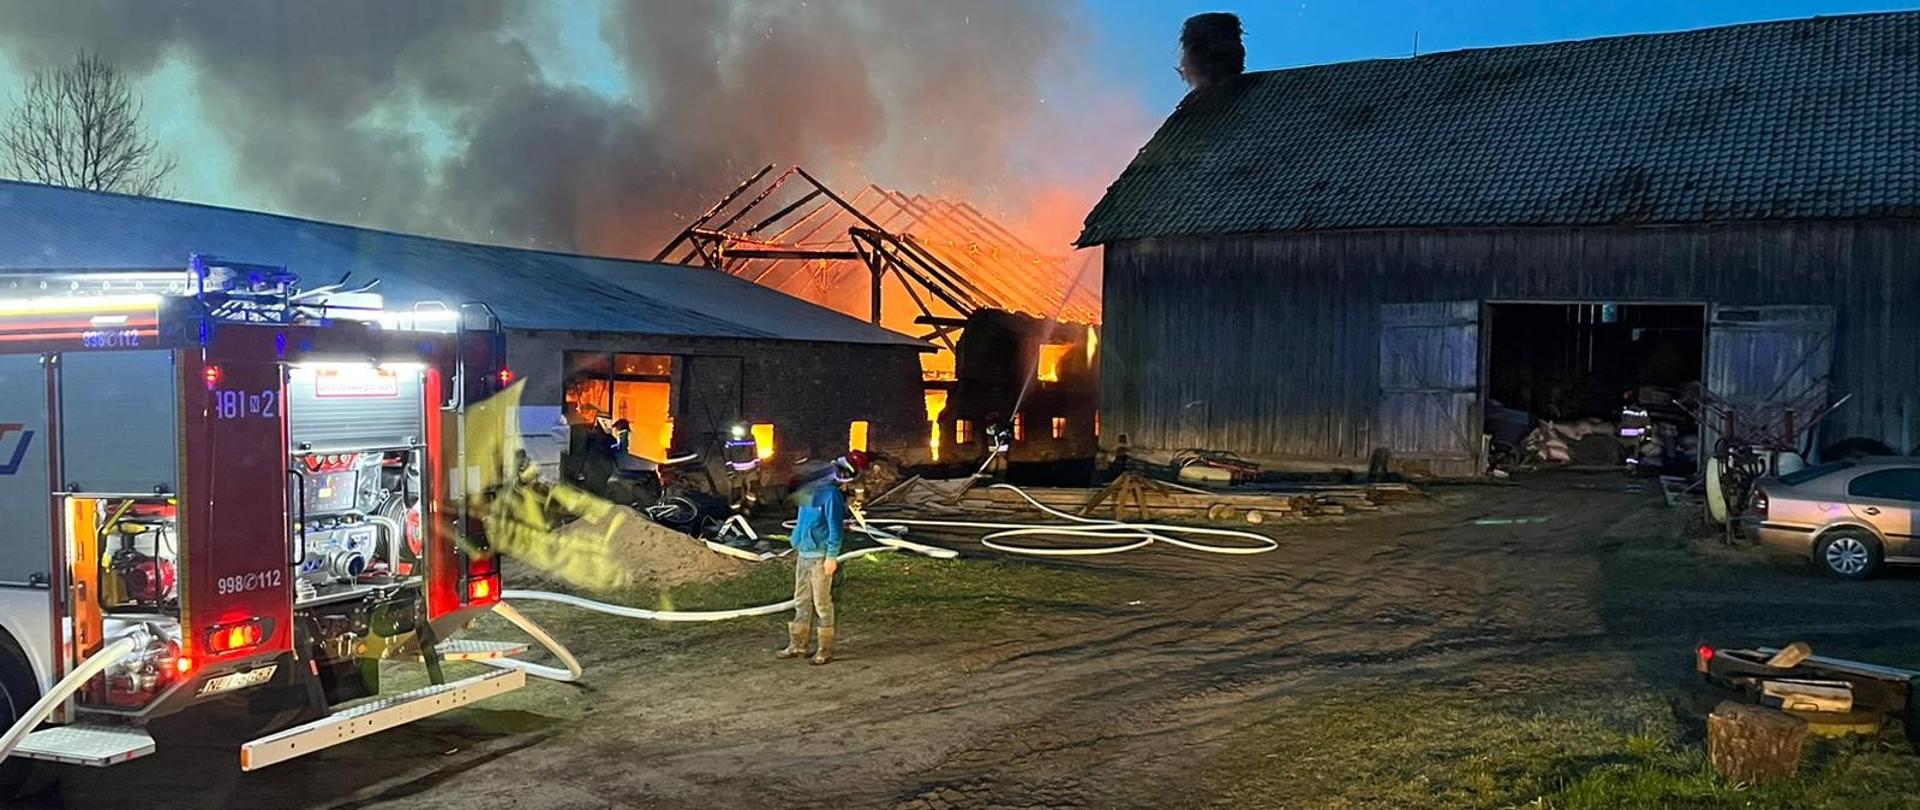 Zdjęcie przedstawia budynek gospodarczy w płomieniach oraz zagrożoną bezpośrednio stodołę.